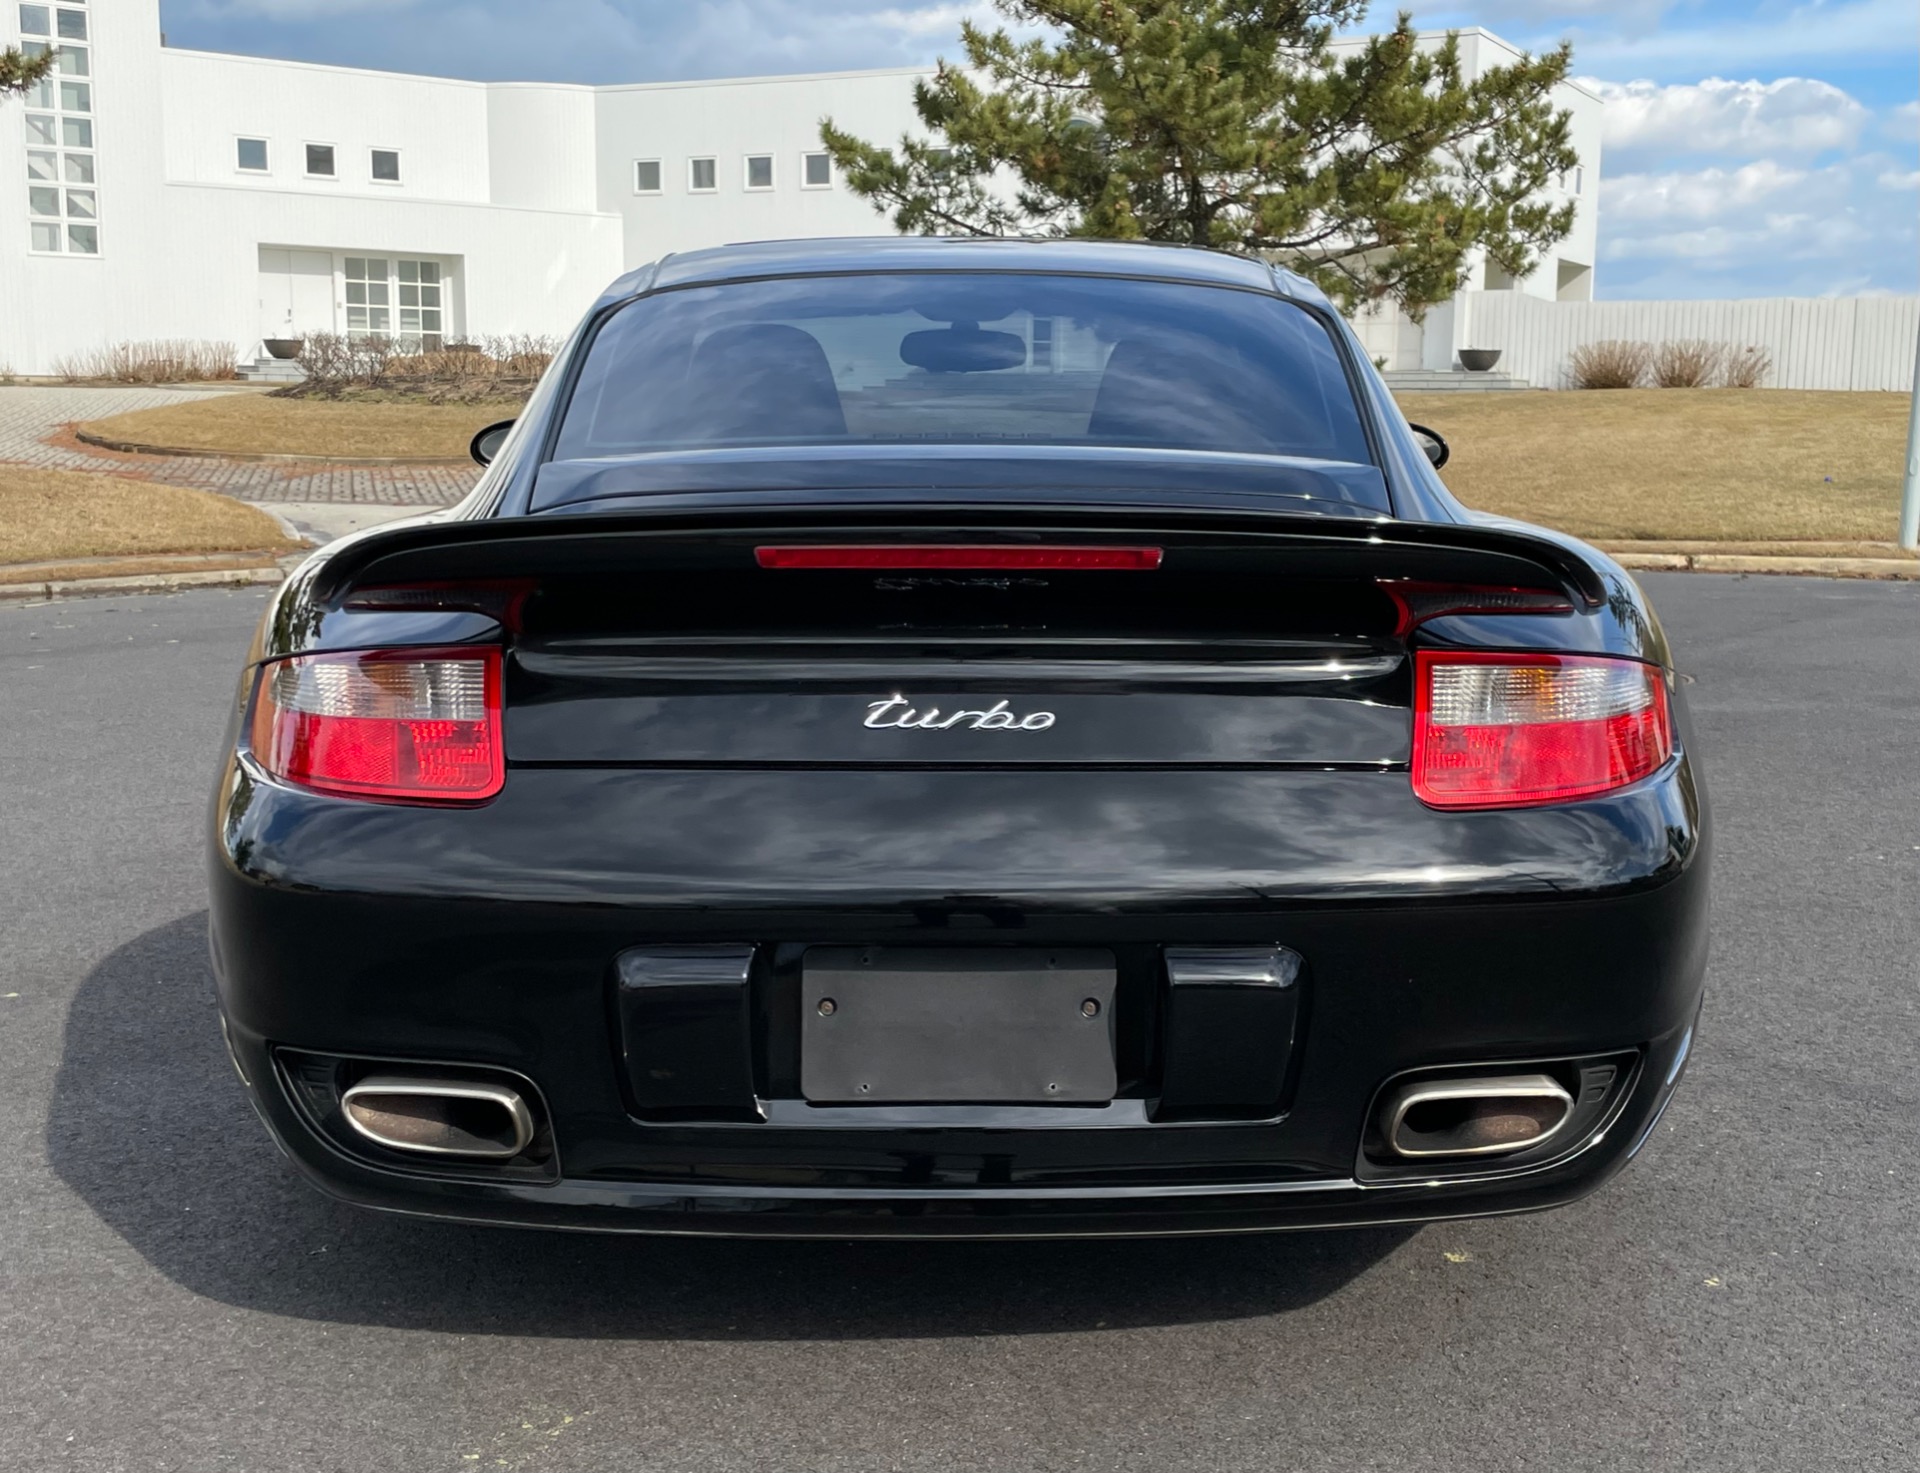 Used-2007-Porsche-911-Turbo-997